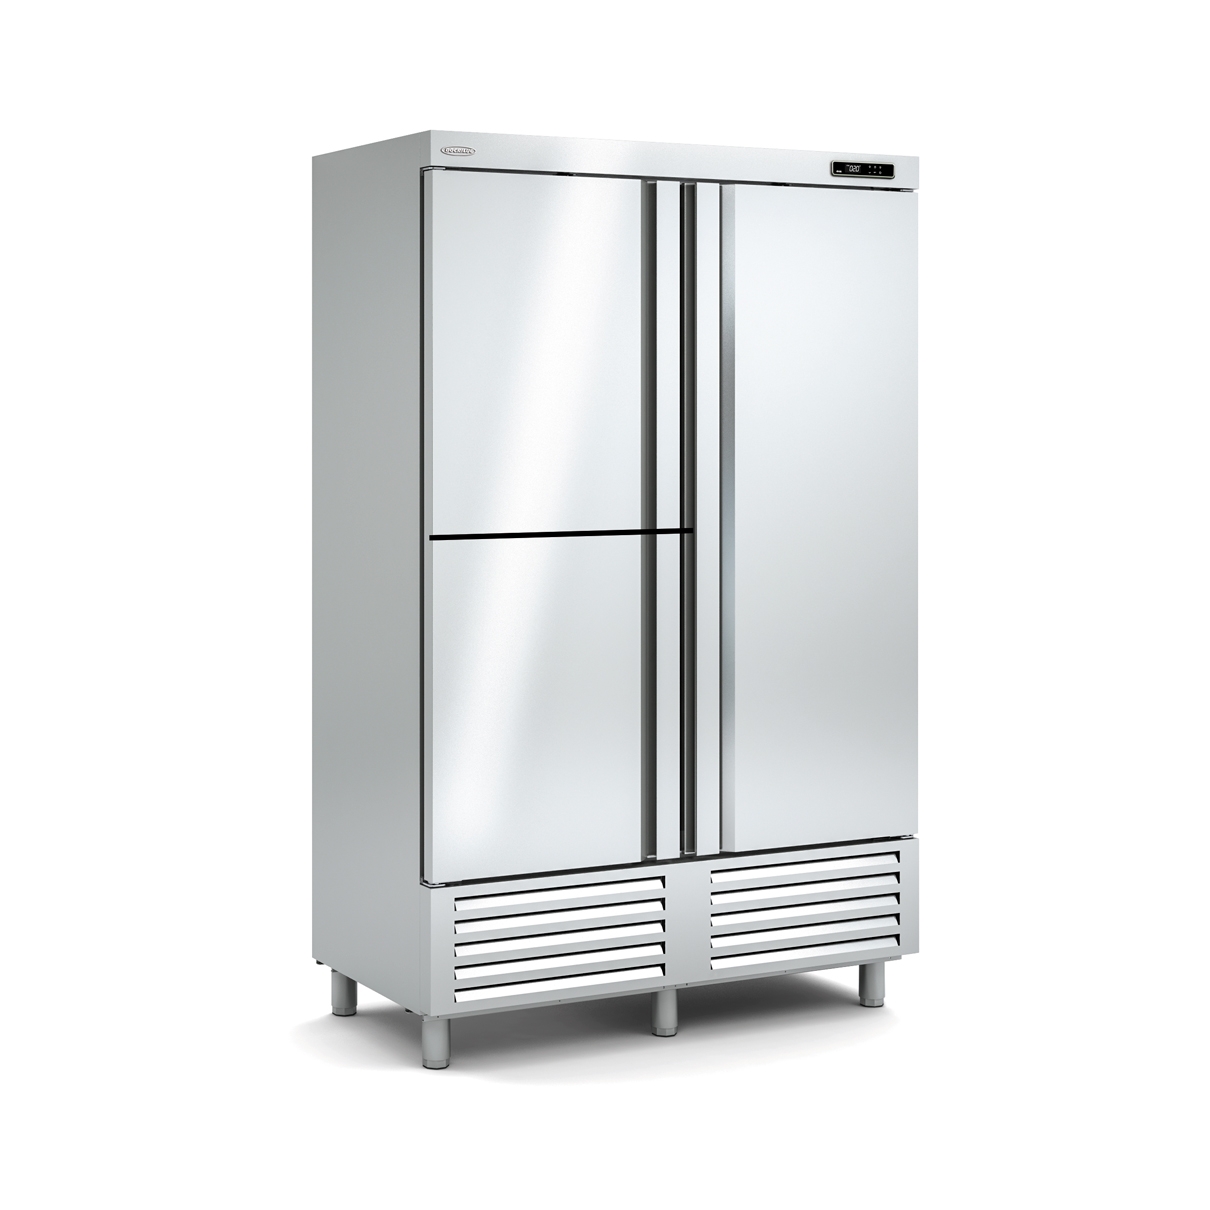 Snack Freezing Cabinet ACS-140-3